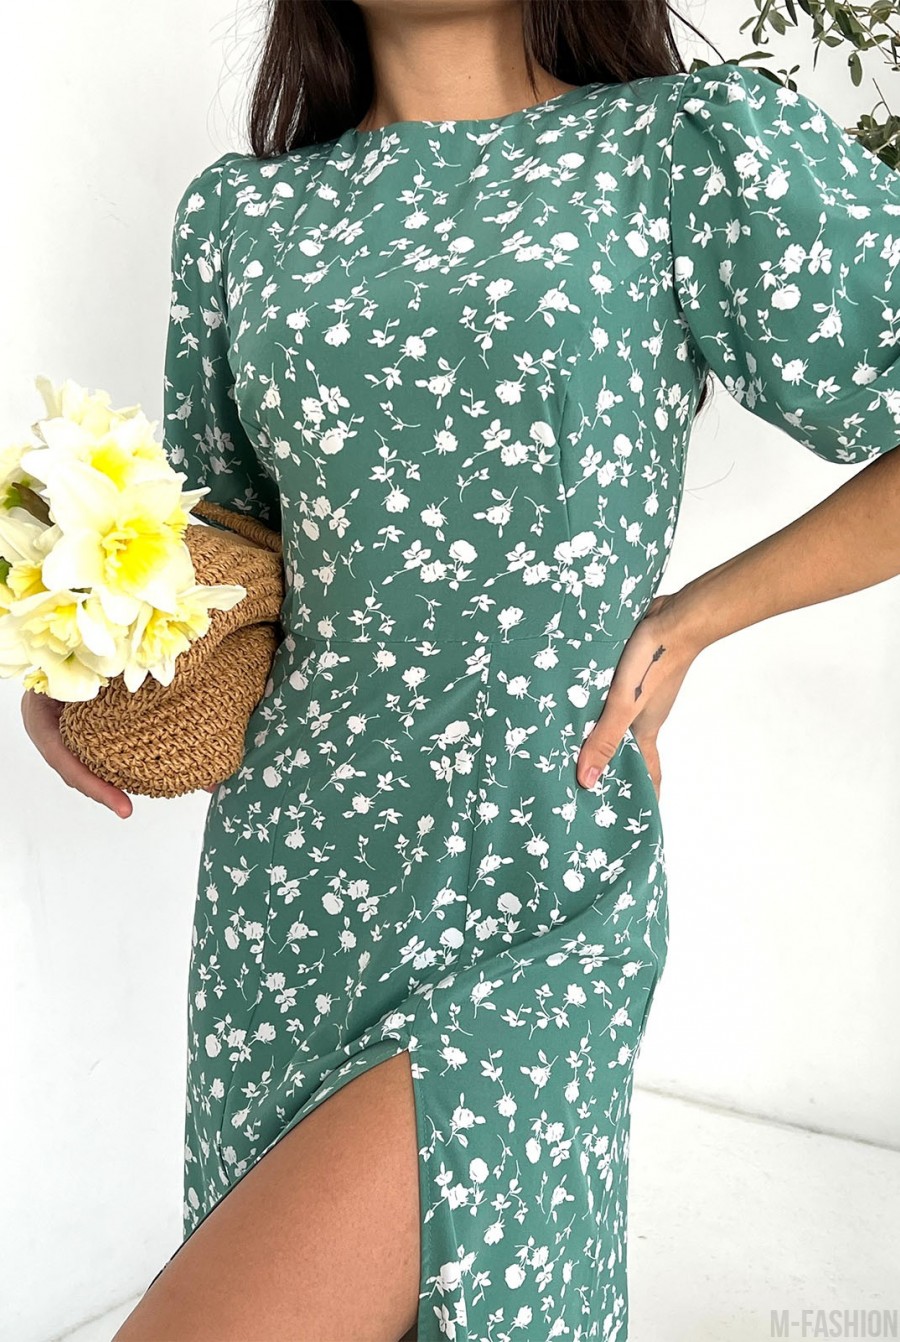 Оливковое цветочное платье с объемными рукавами - Фото 4